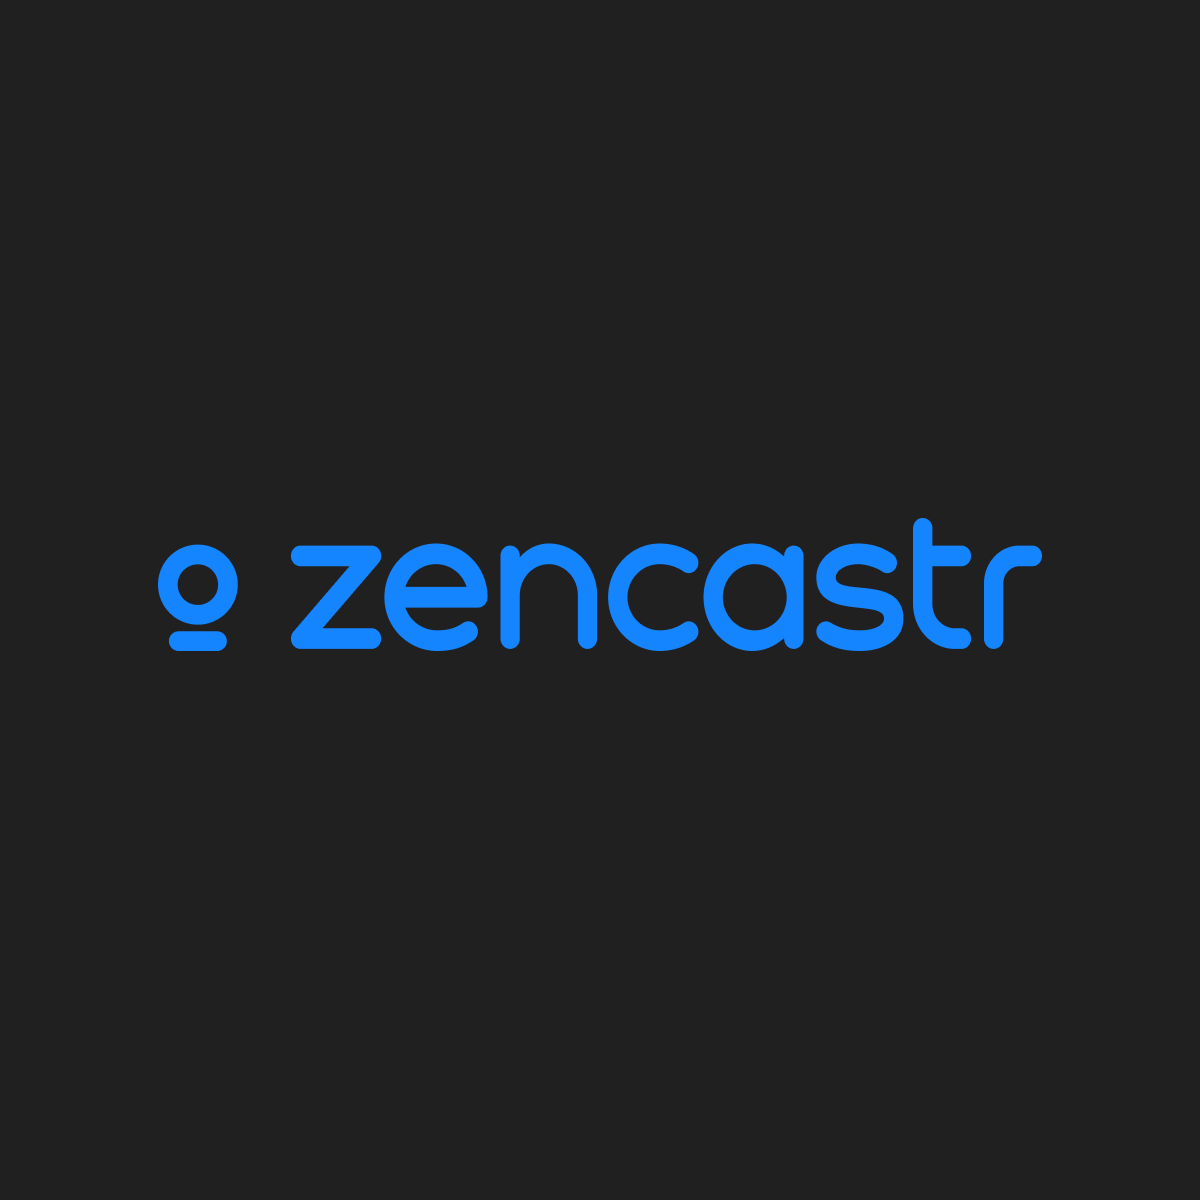 (c) Zencastr.com